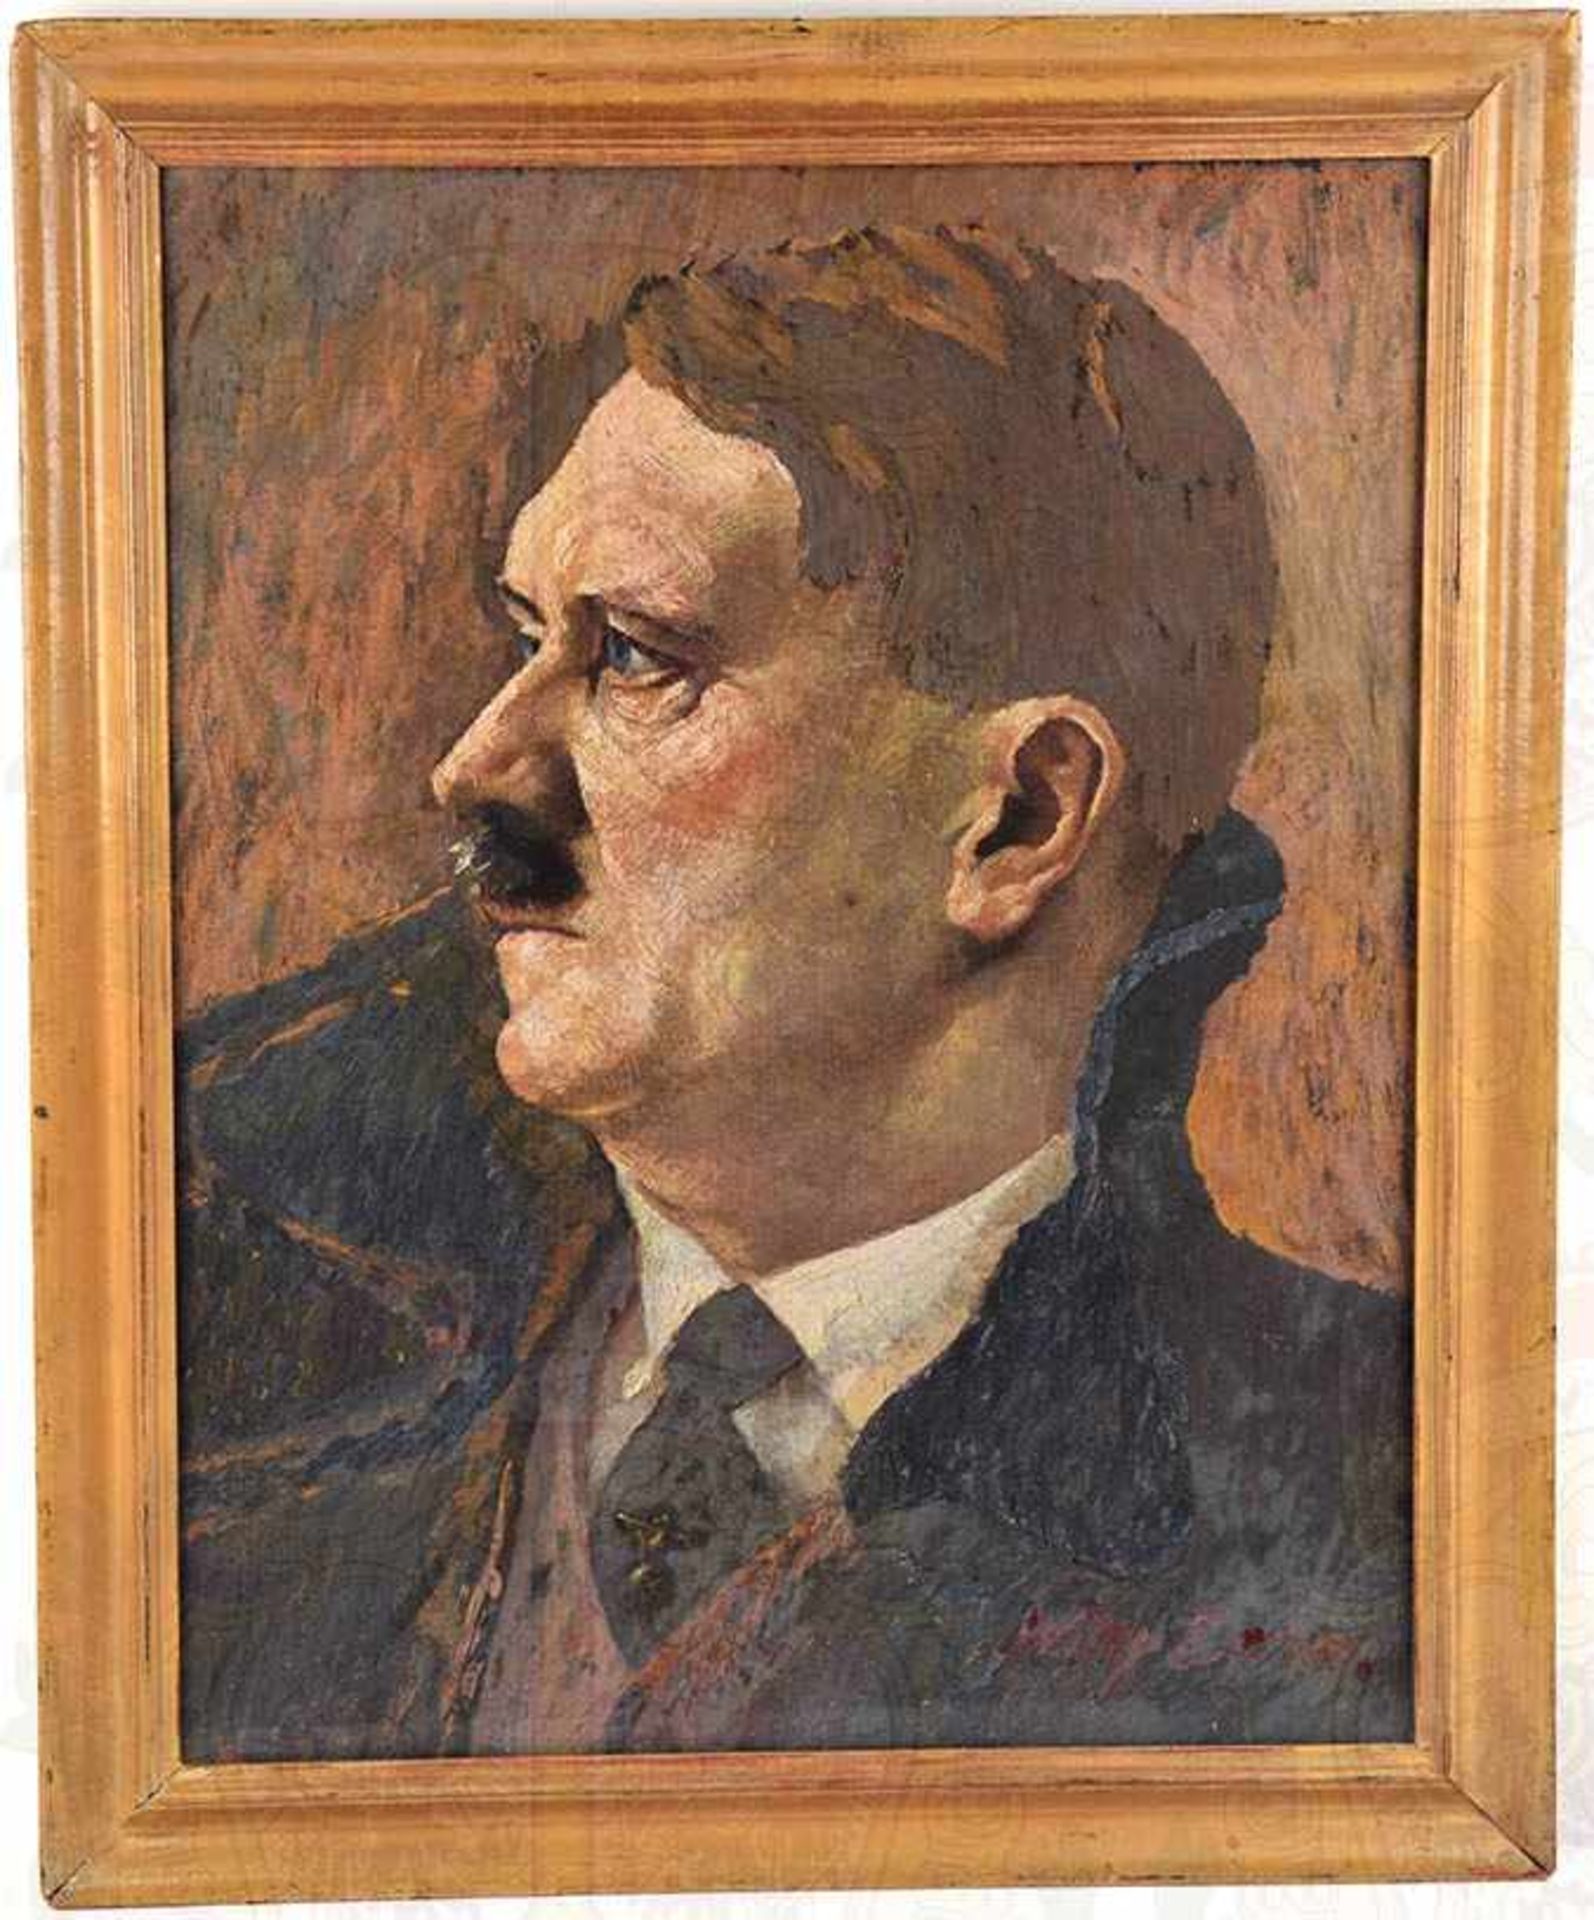 PORTRAIT ADOLF HITLER, Farbdruck nach dem bekannten Gemälde von Willy Exner, 1936, Darstellung in